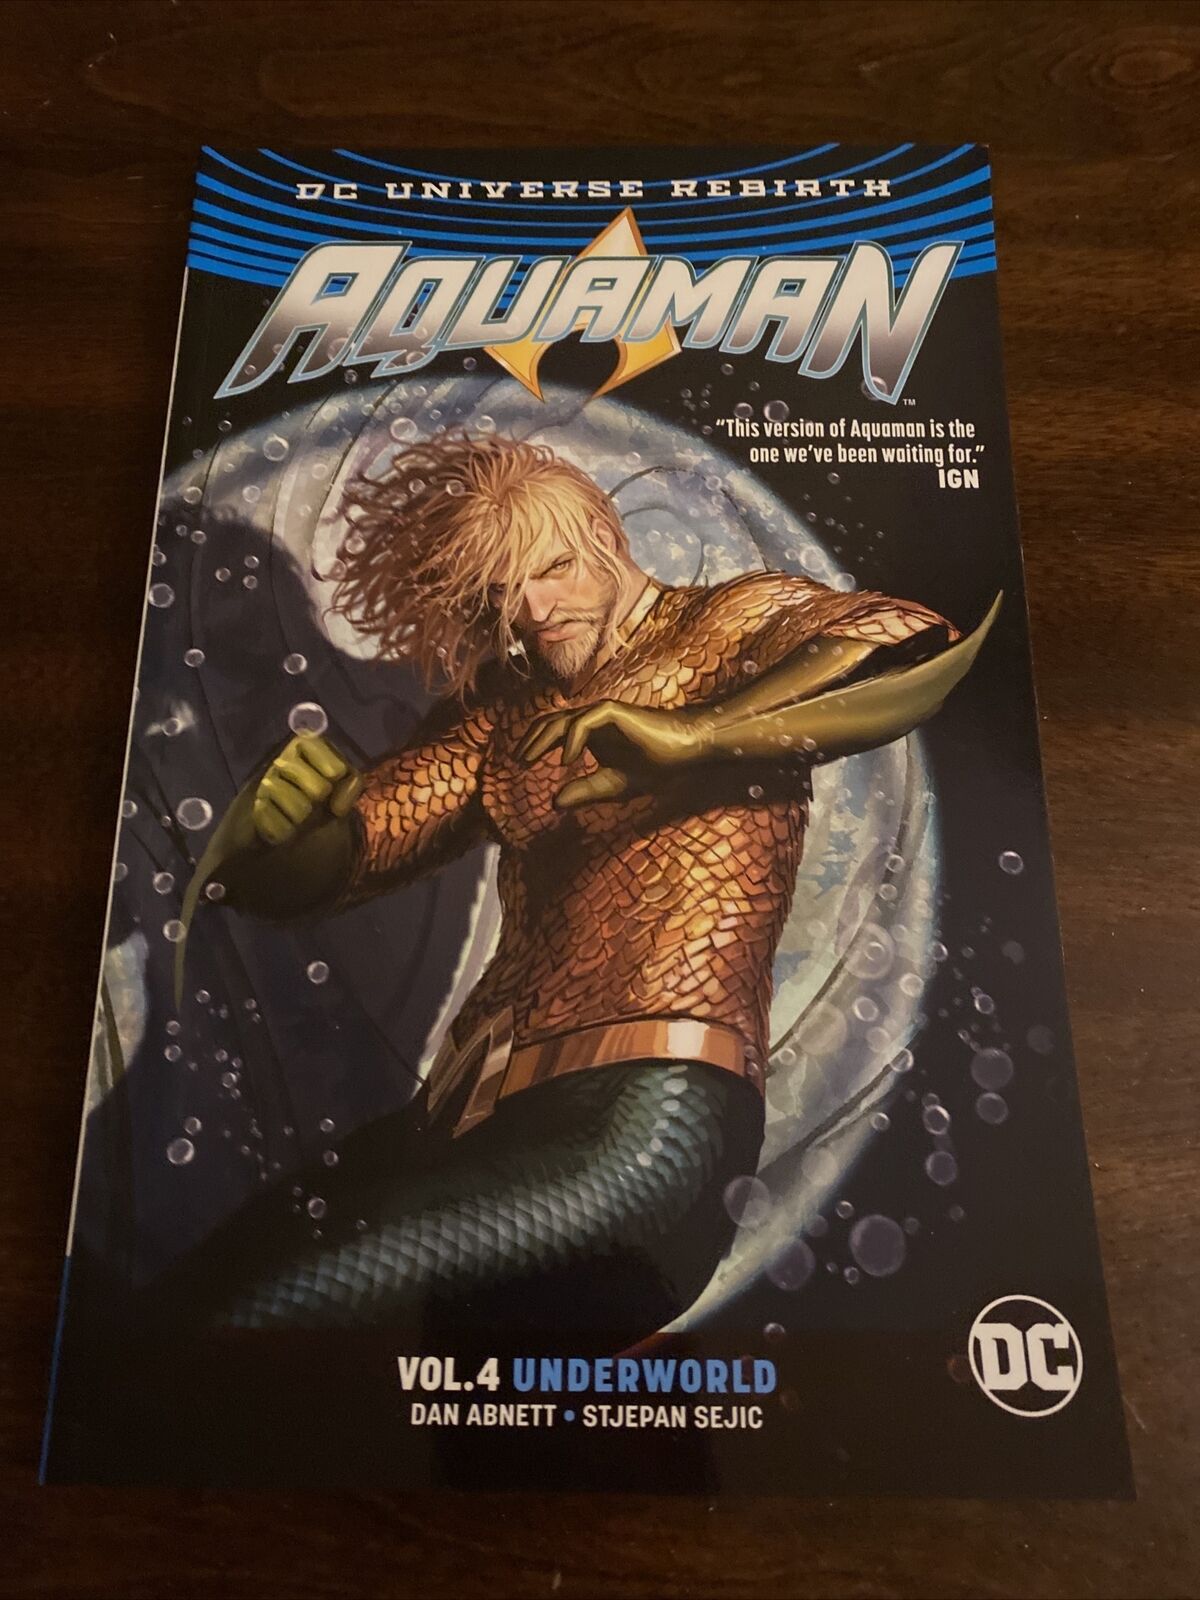 Aquaman Vol 4 Underworld (DC Comics, March 2018 Trade Paperback) BRAND NEW